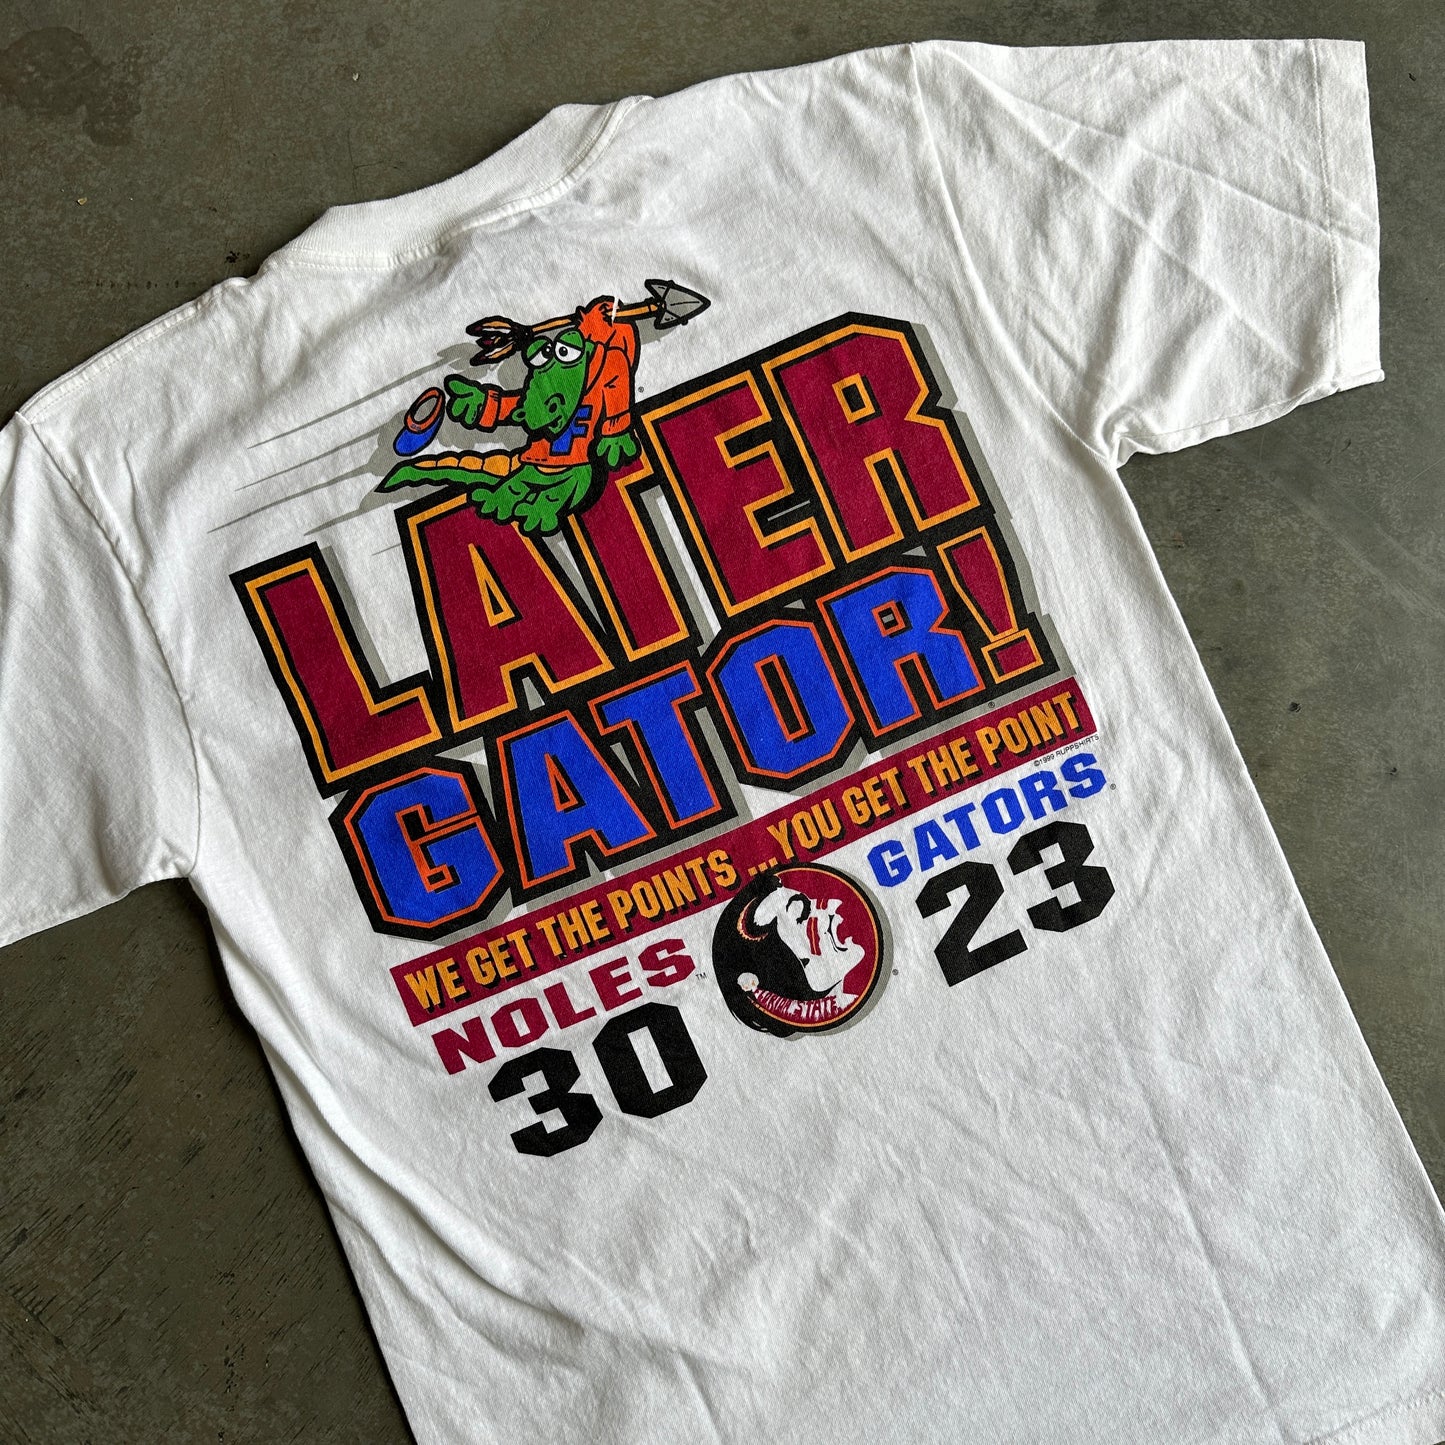 1999 FSU vs. UF Later Gator Shirt